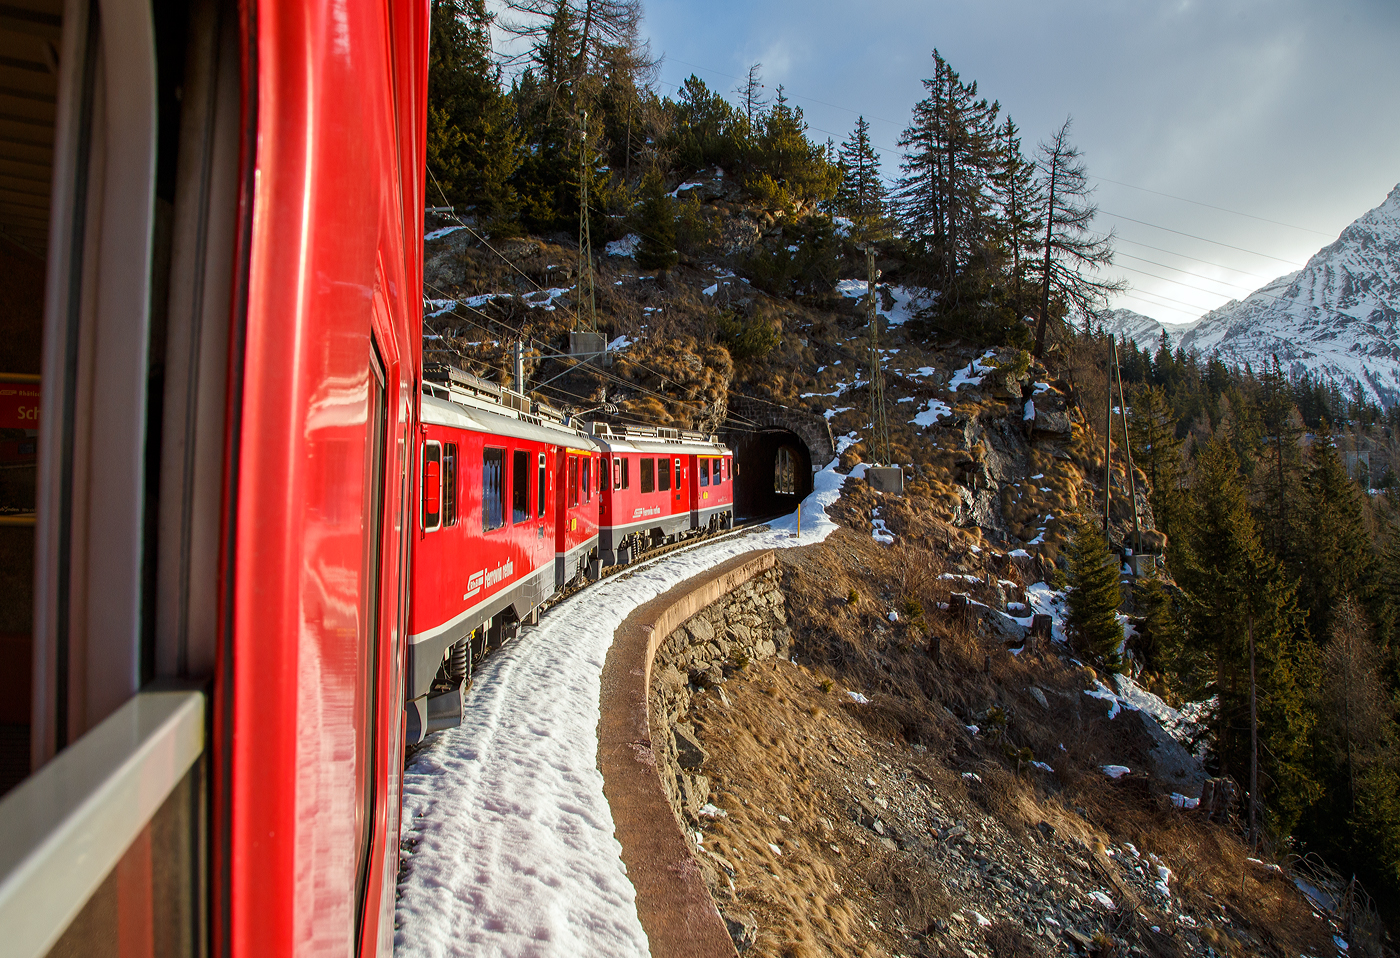 Geführt RhB ABe 4/4 III Bernina-Triebwagen 54  Hakone / 箱根町  und 53  Tirano  fährt unser RhB Bernina-Regio von Tirano nach St. Moritz am 20 Februar 2017 vom Puschlav (Val Poschiavo) hinauf in Richtung Cavaglia 1.692 m ü. M. (bzw. Alp Grüm  und  Ospizio Bernina).

Hier fahren wir gleich in den 46 m langen Puntaltotunnel (bei km 33,787) ein.